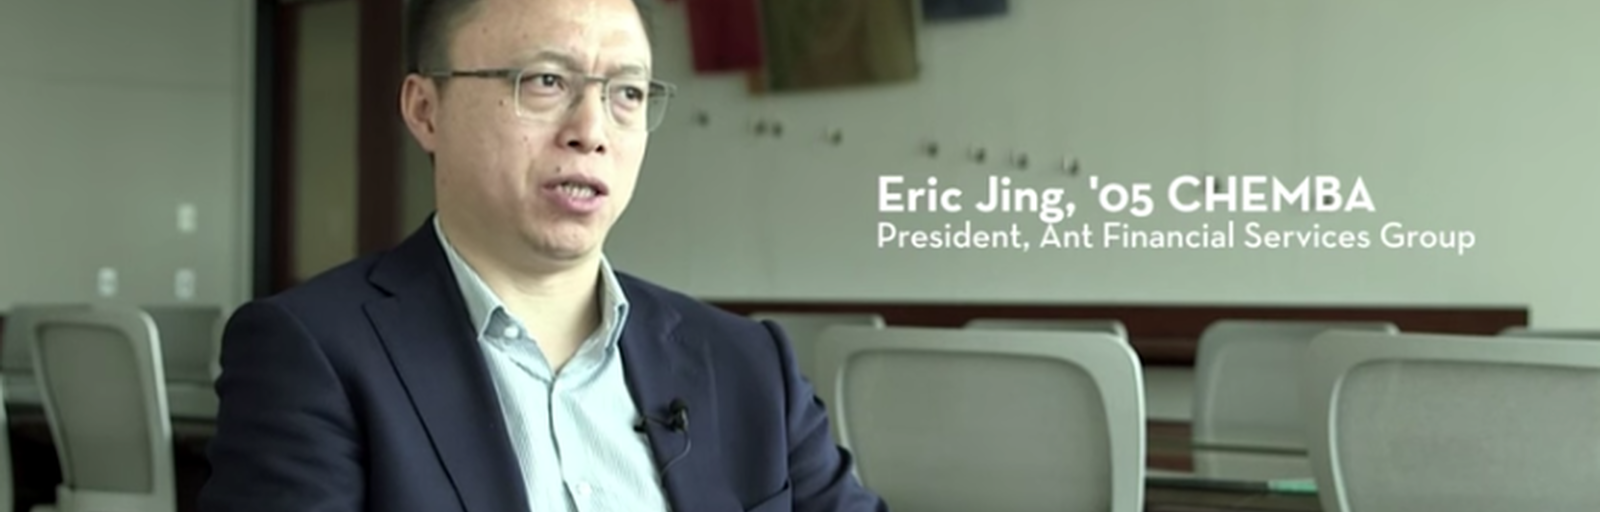 Eric Jing